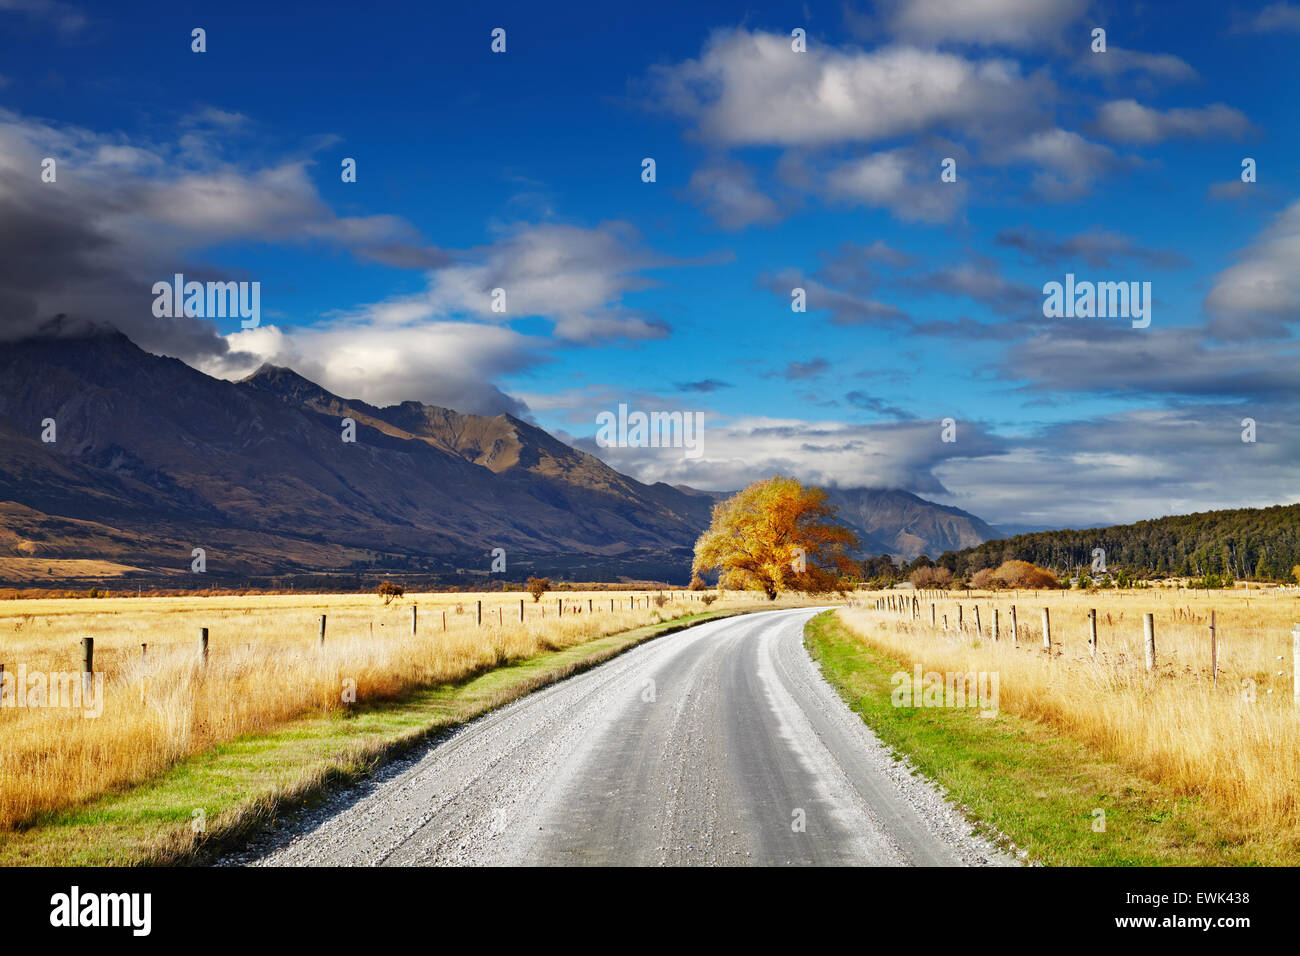 Paysage de montagne avec road et de ciel bleu, de l'Otago, Nouvelle-Zélande Banque D'Images